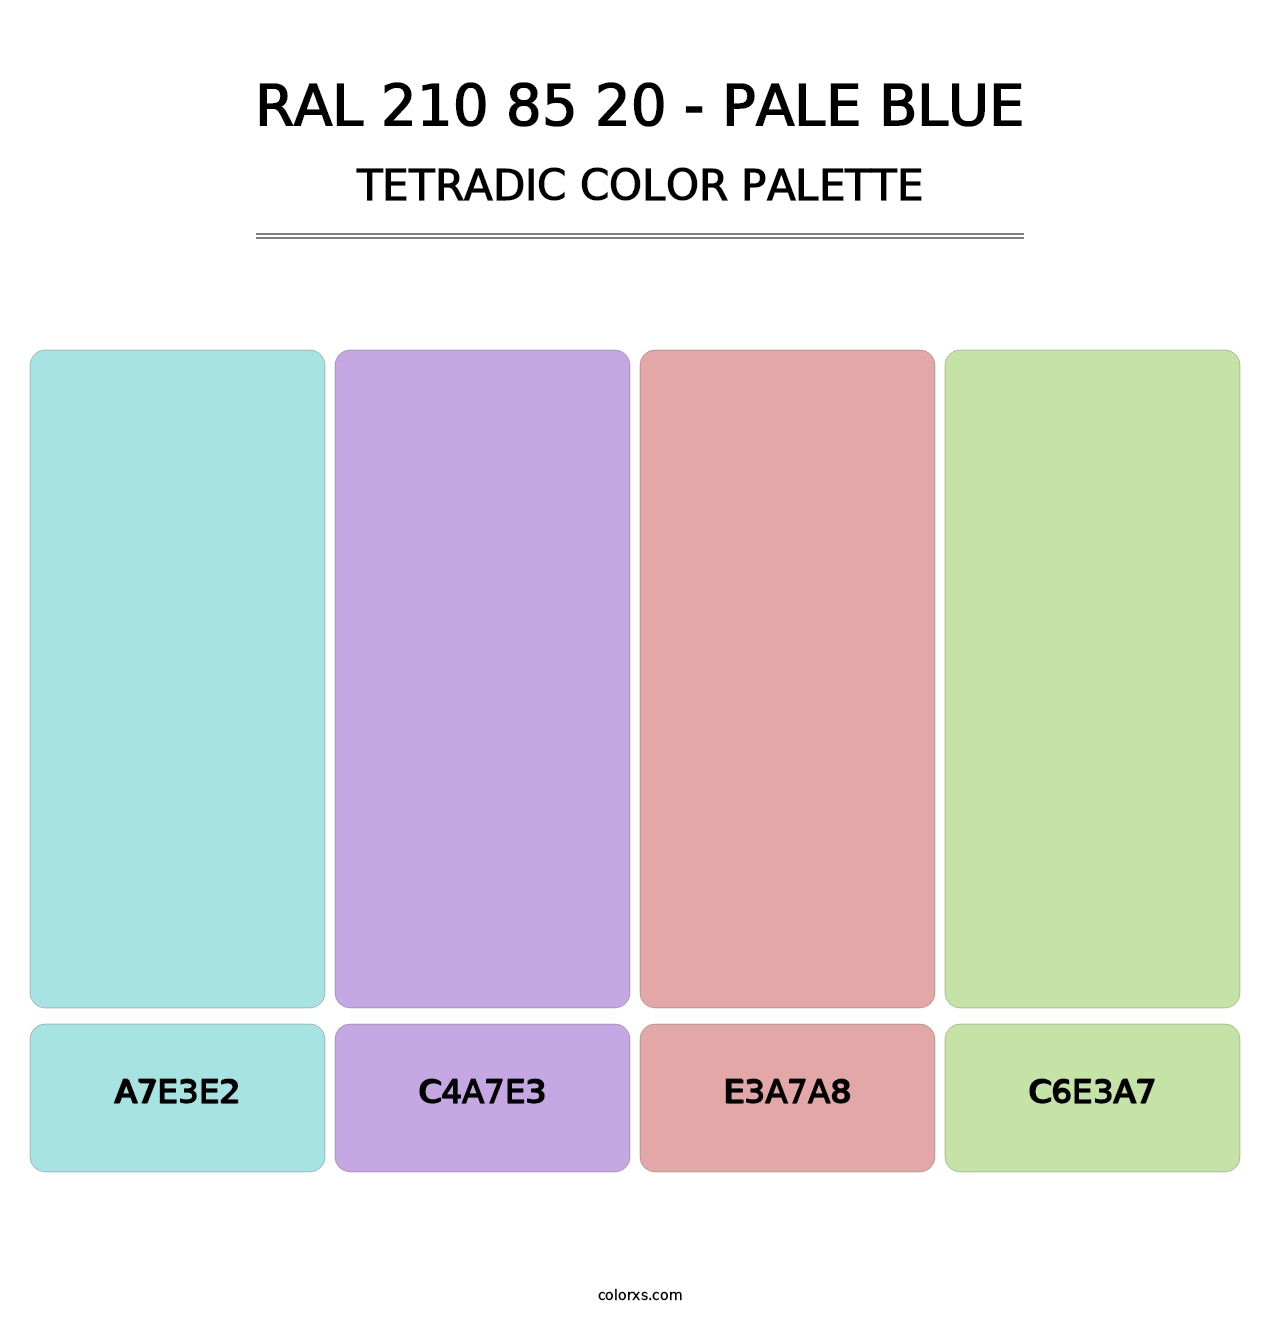 RAL 210 85 20 - Pale Blue - Tetradic Color Palette